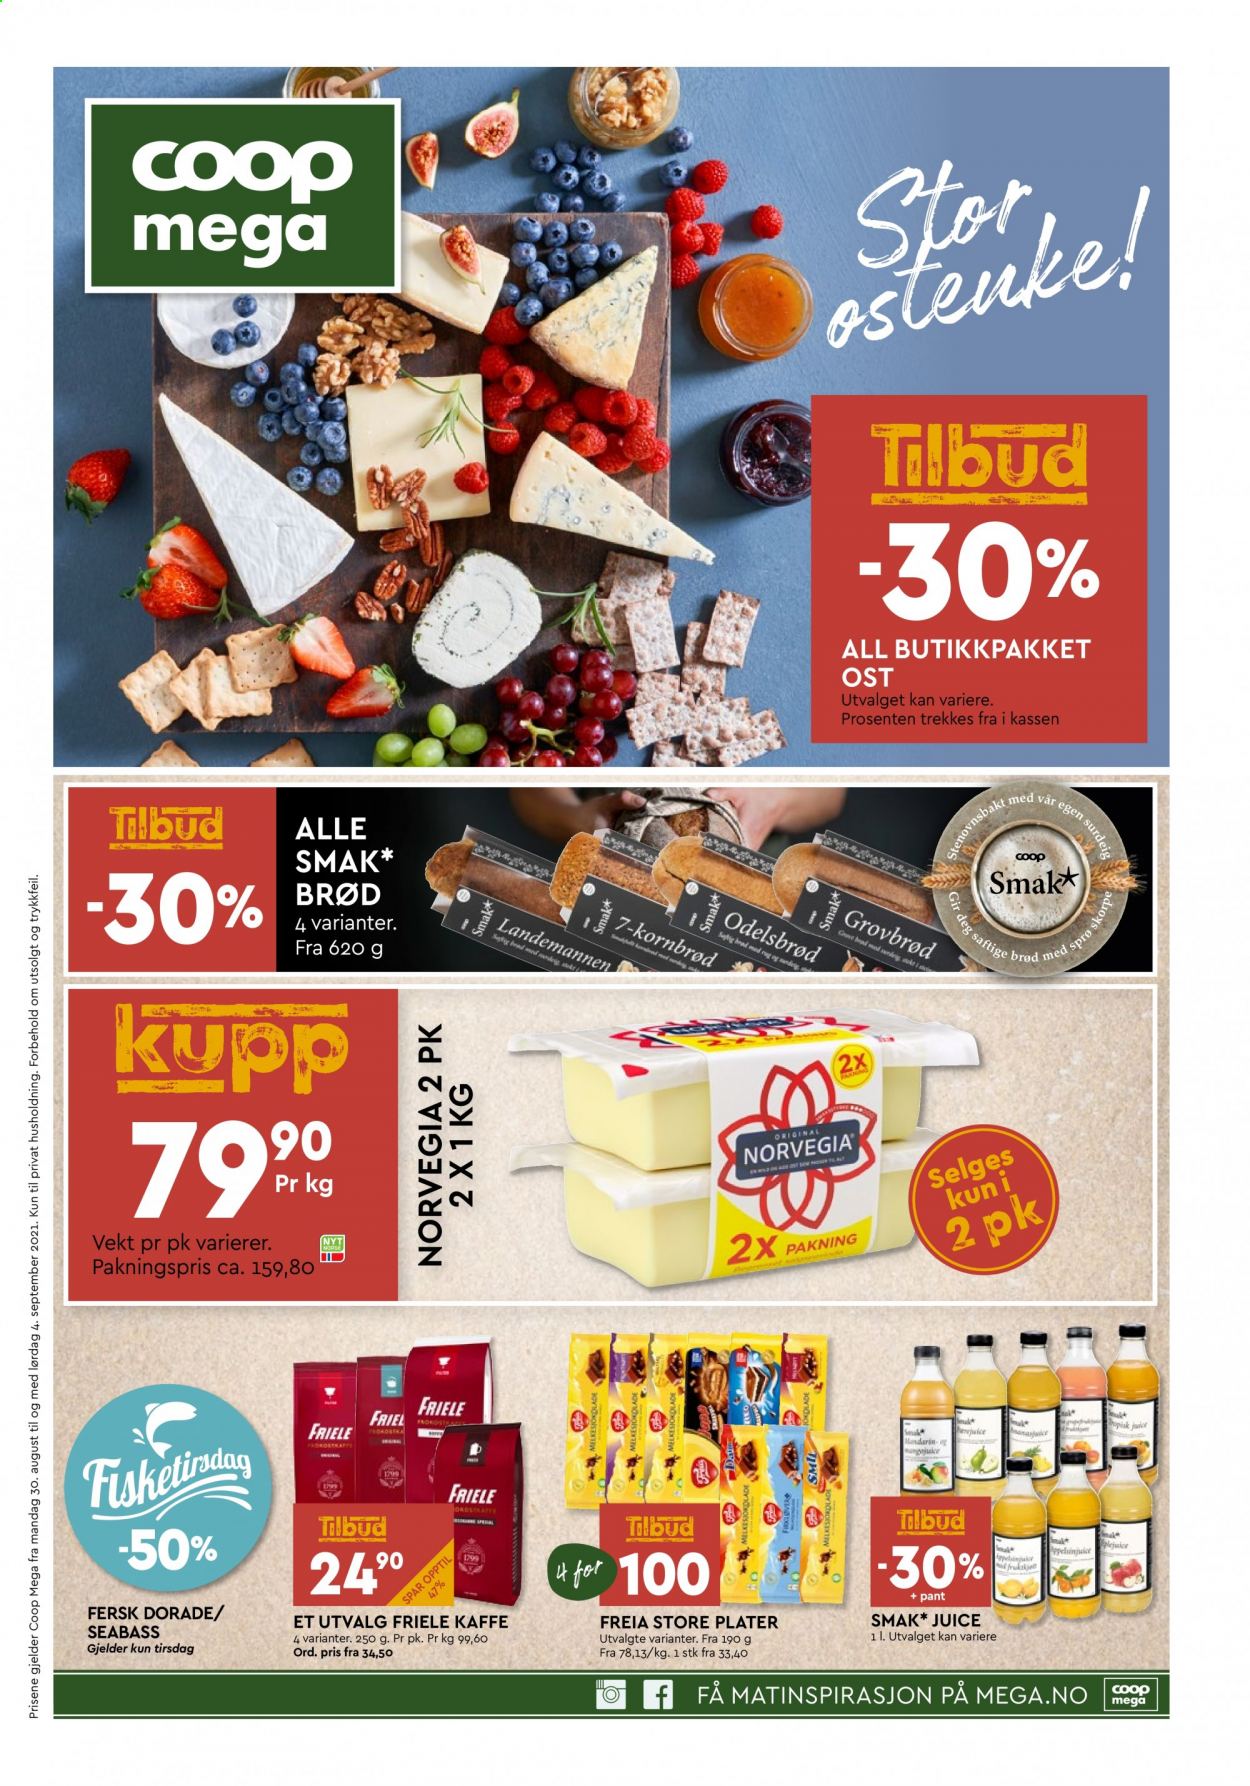 thumbnail - Kundeavis Coop Mega - 30.8.2021 - 4.9.2021 - Produkter fra tilbudsaviser - brød, Norvegia, ost, Freia, surdeig. Side 1.